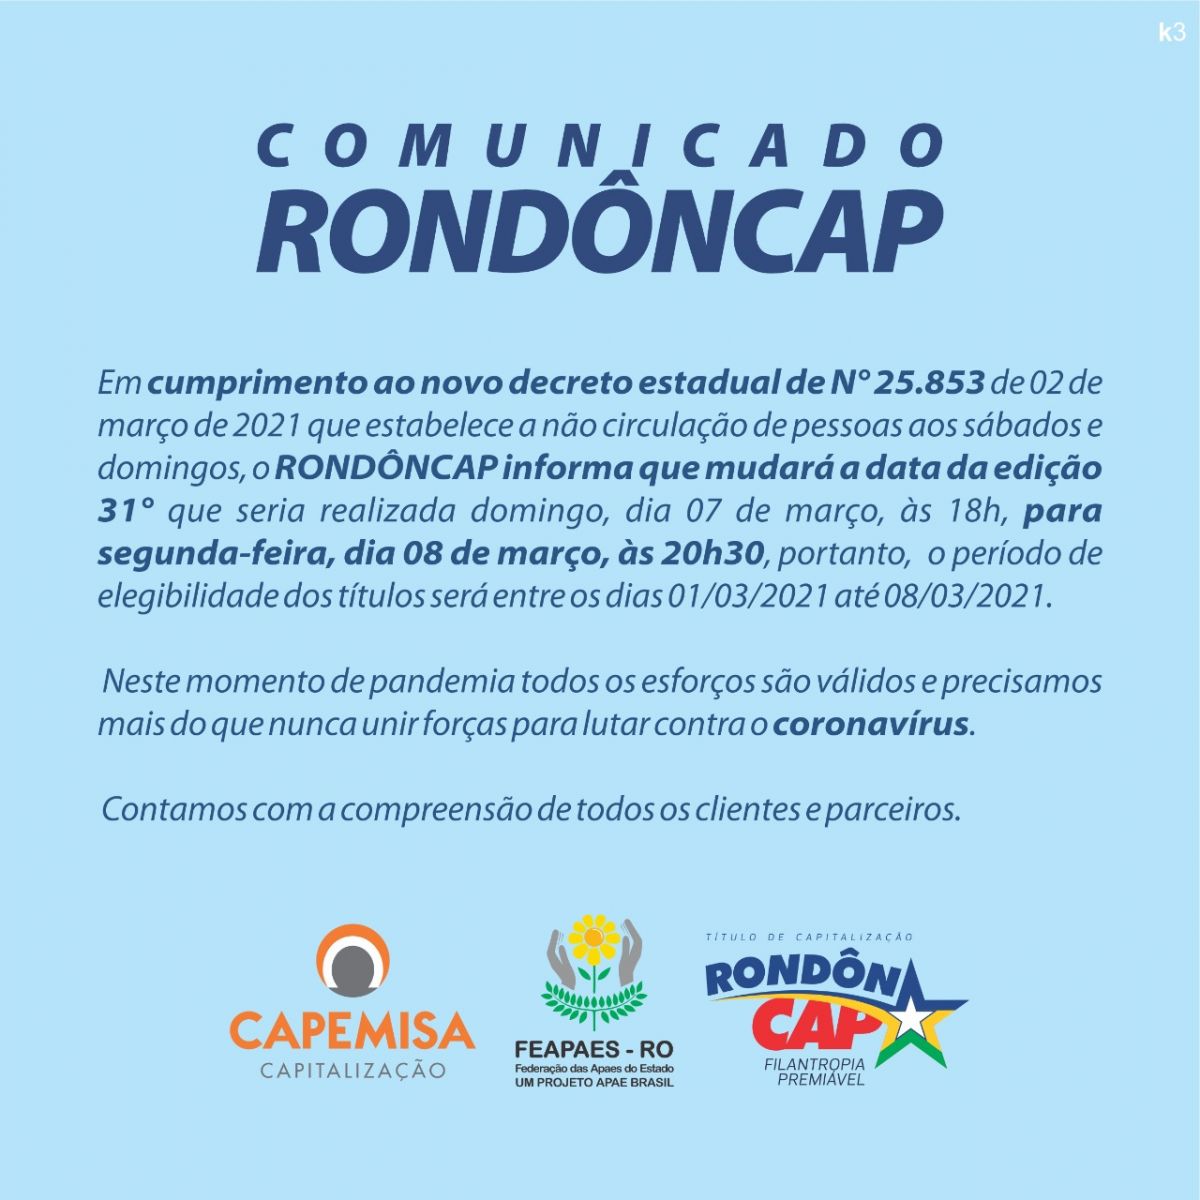 Rondoncap comunica nova data de sorteio em virtude do novo decreto - News Rondônia